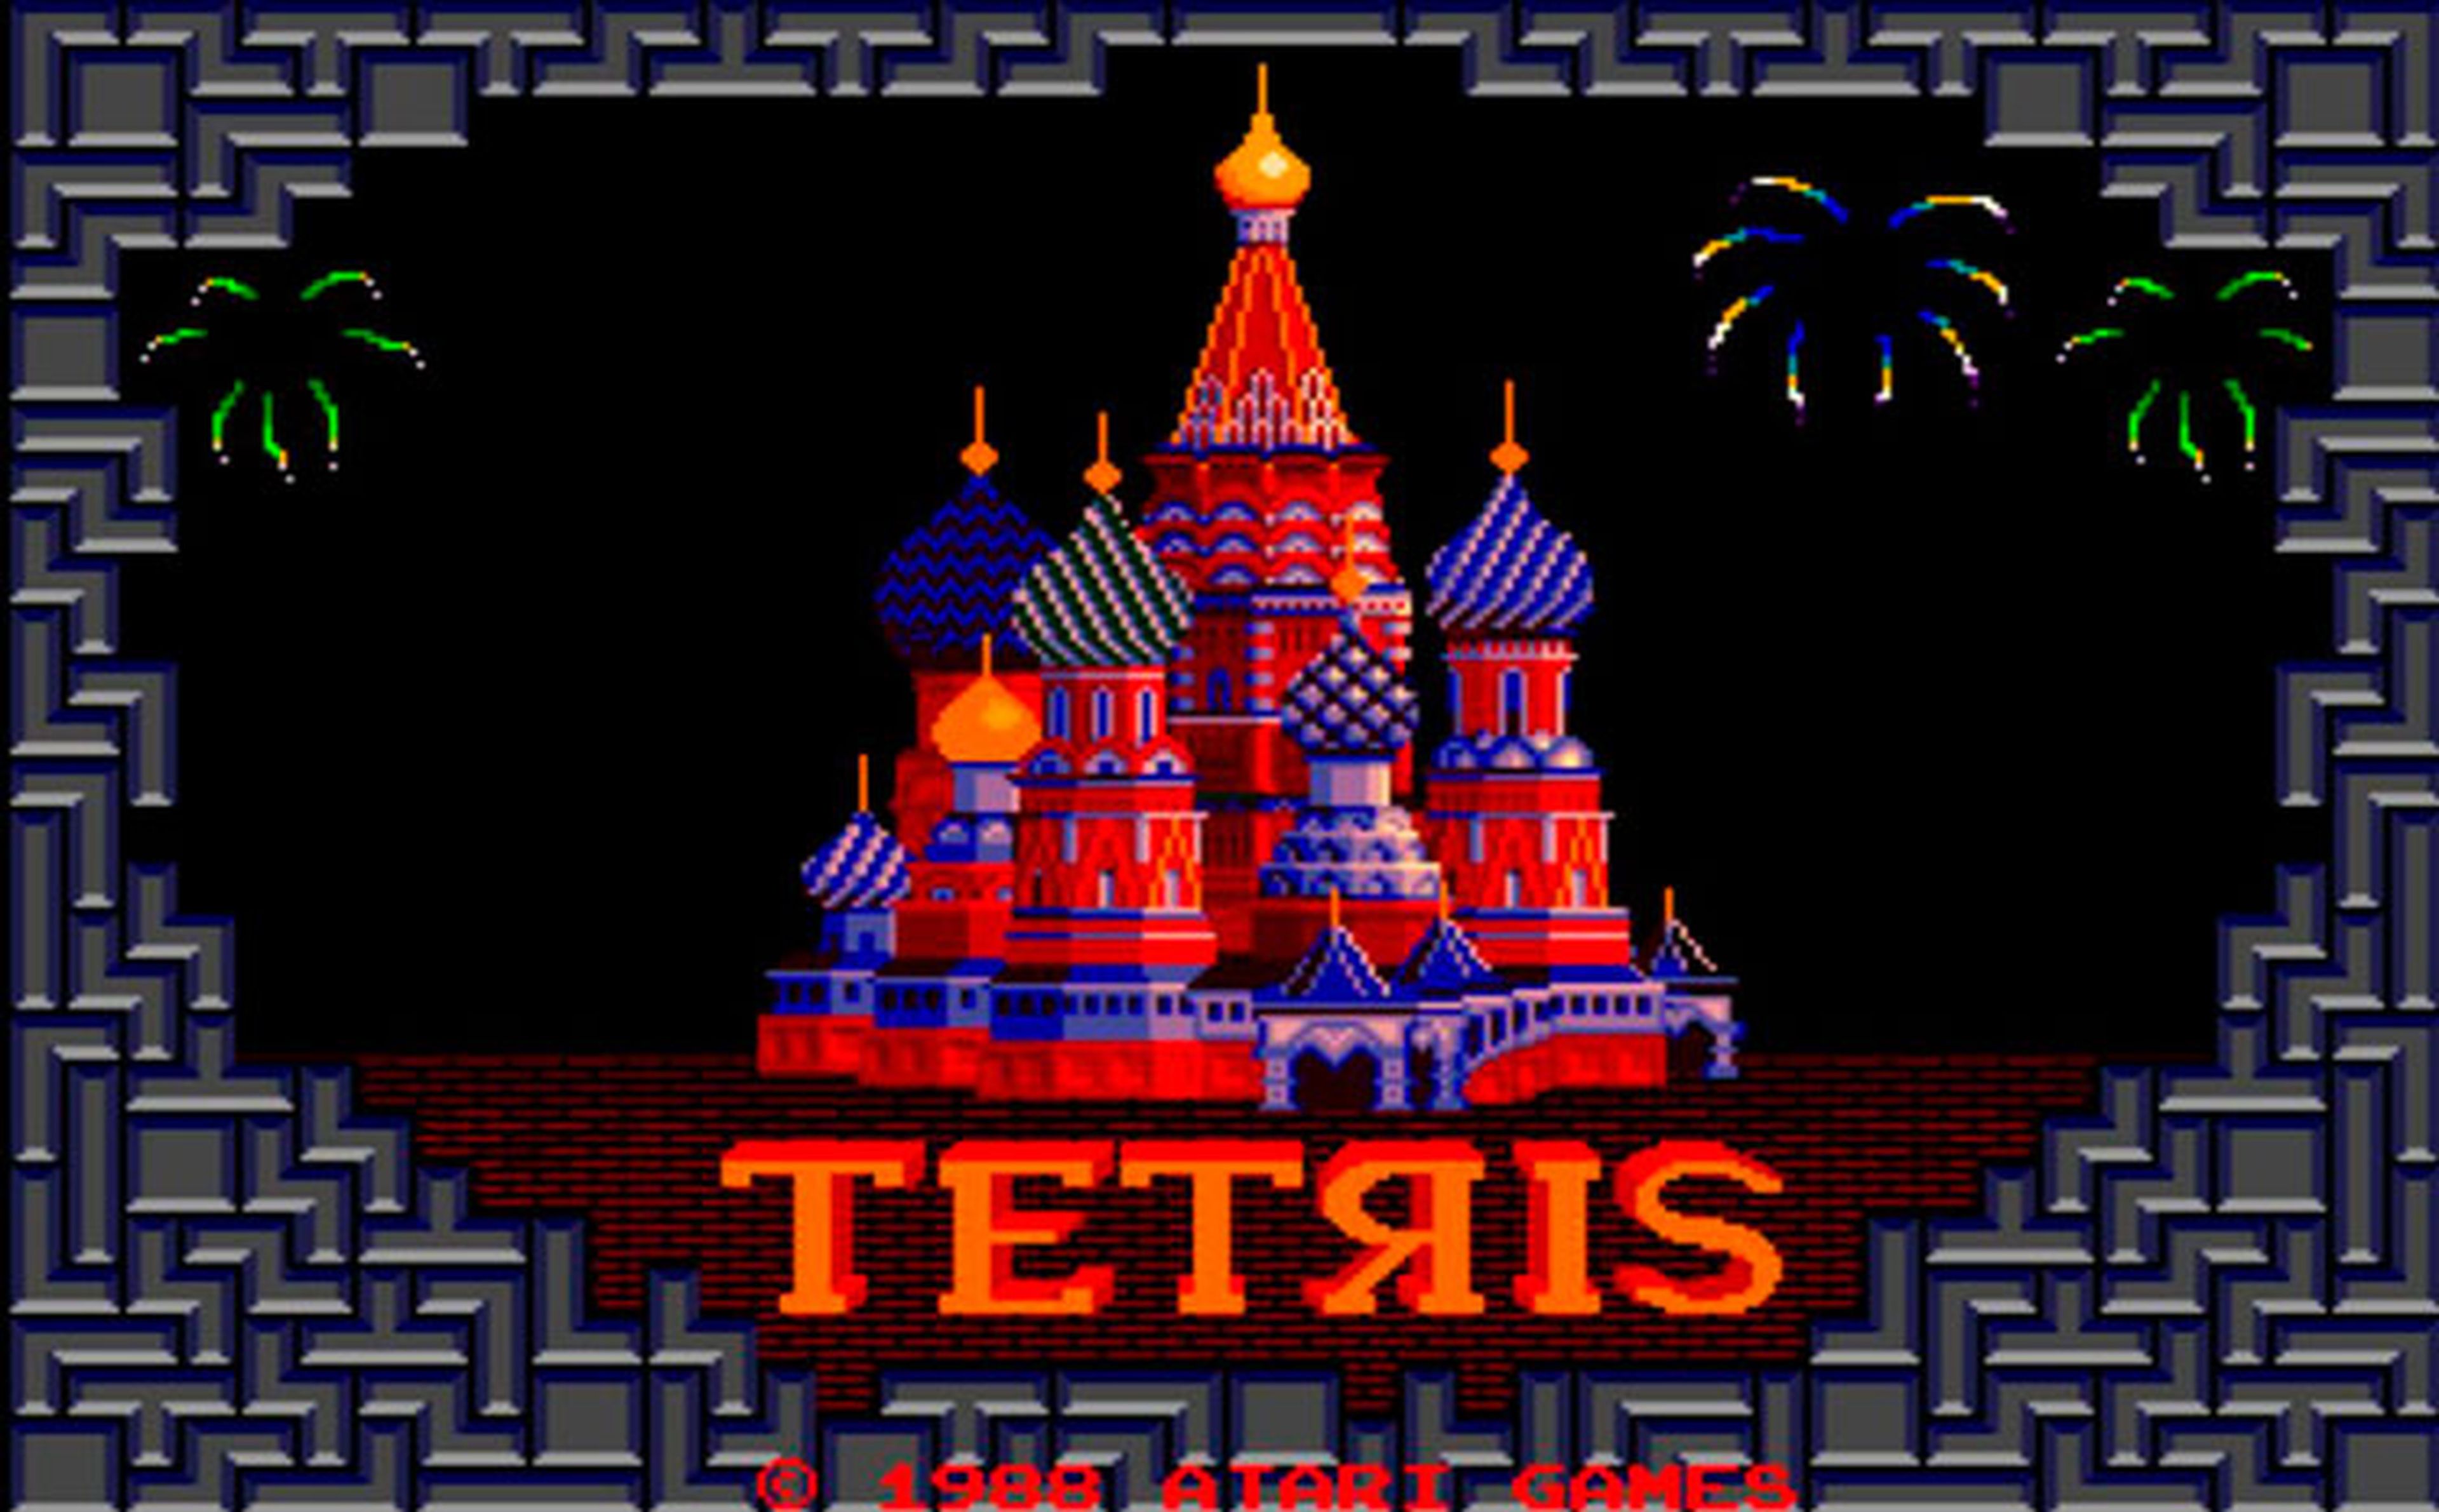 Tetris original